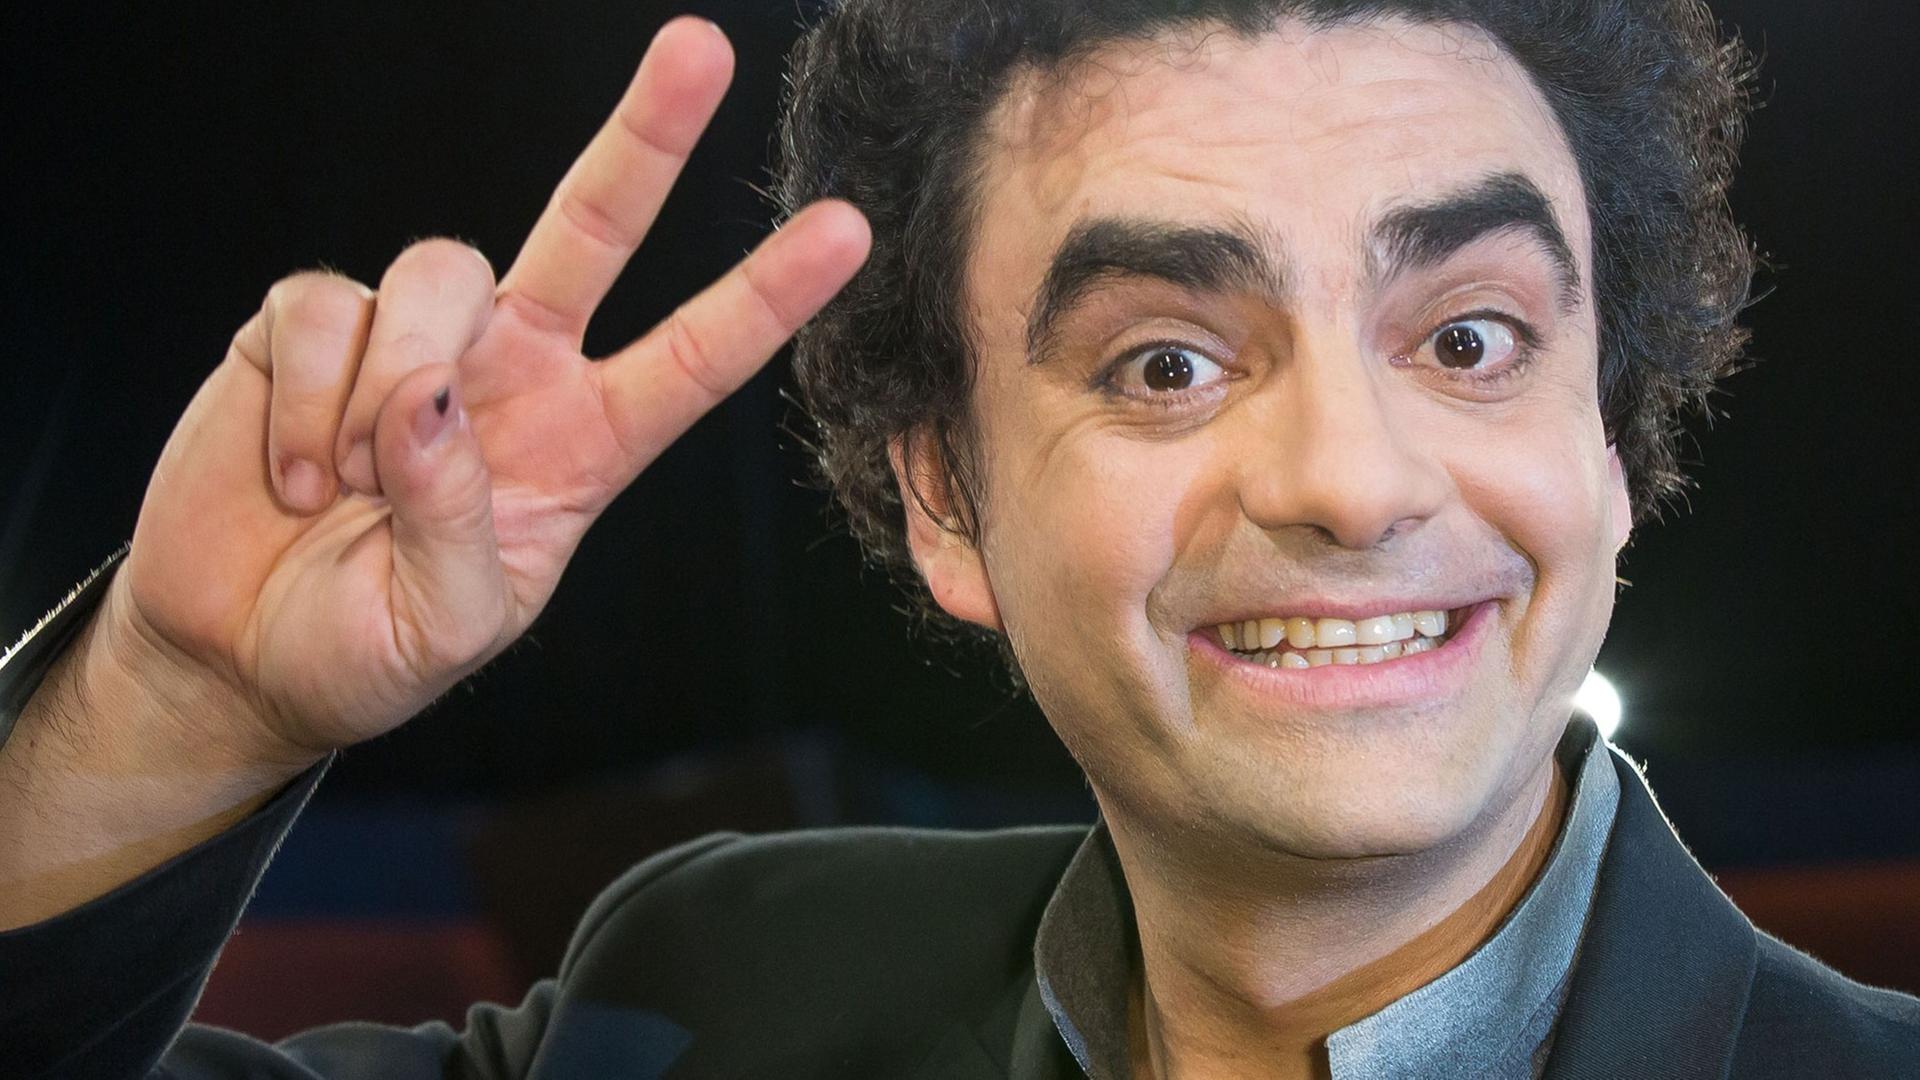 Der französisch-mexikanische Opernsänger Rolando Villazón posiert am 21.02.2014 in Hamburg vor der Aufzeichnung der "NDR Talk Show